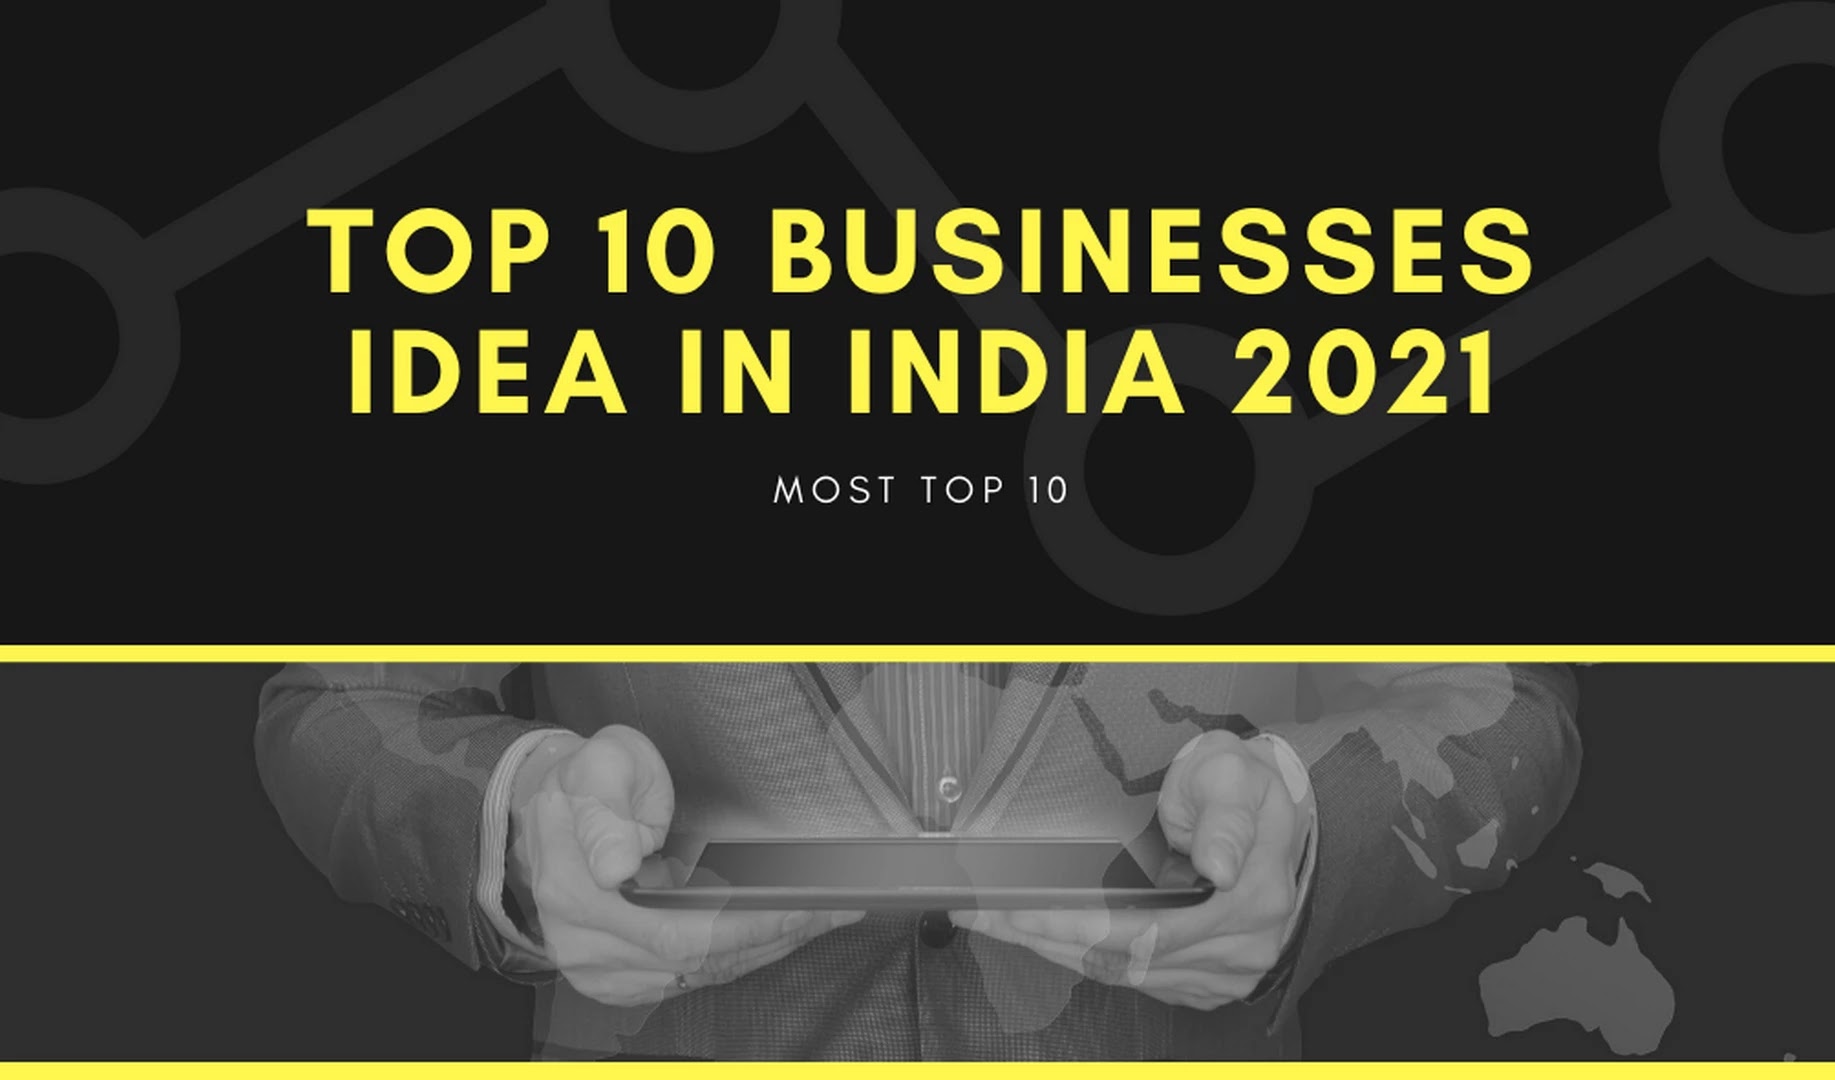 Top 10 Businesses idea in India 2021